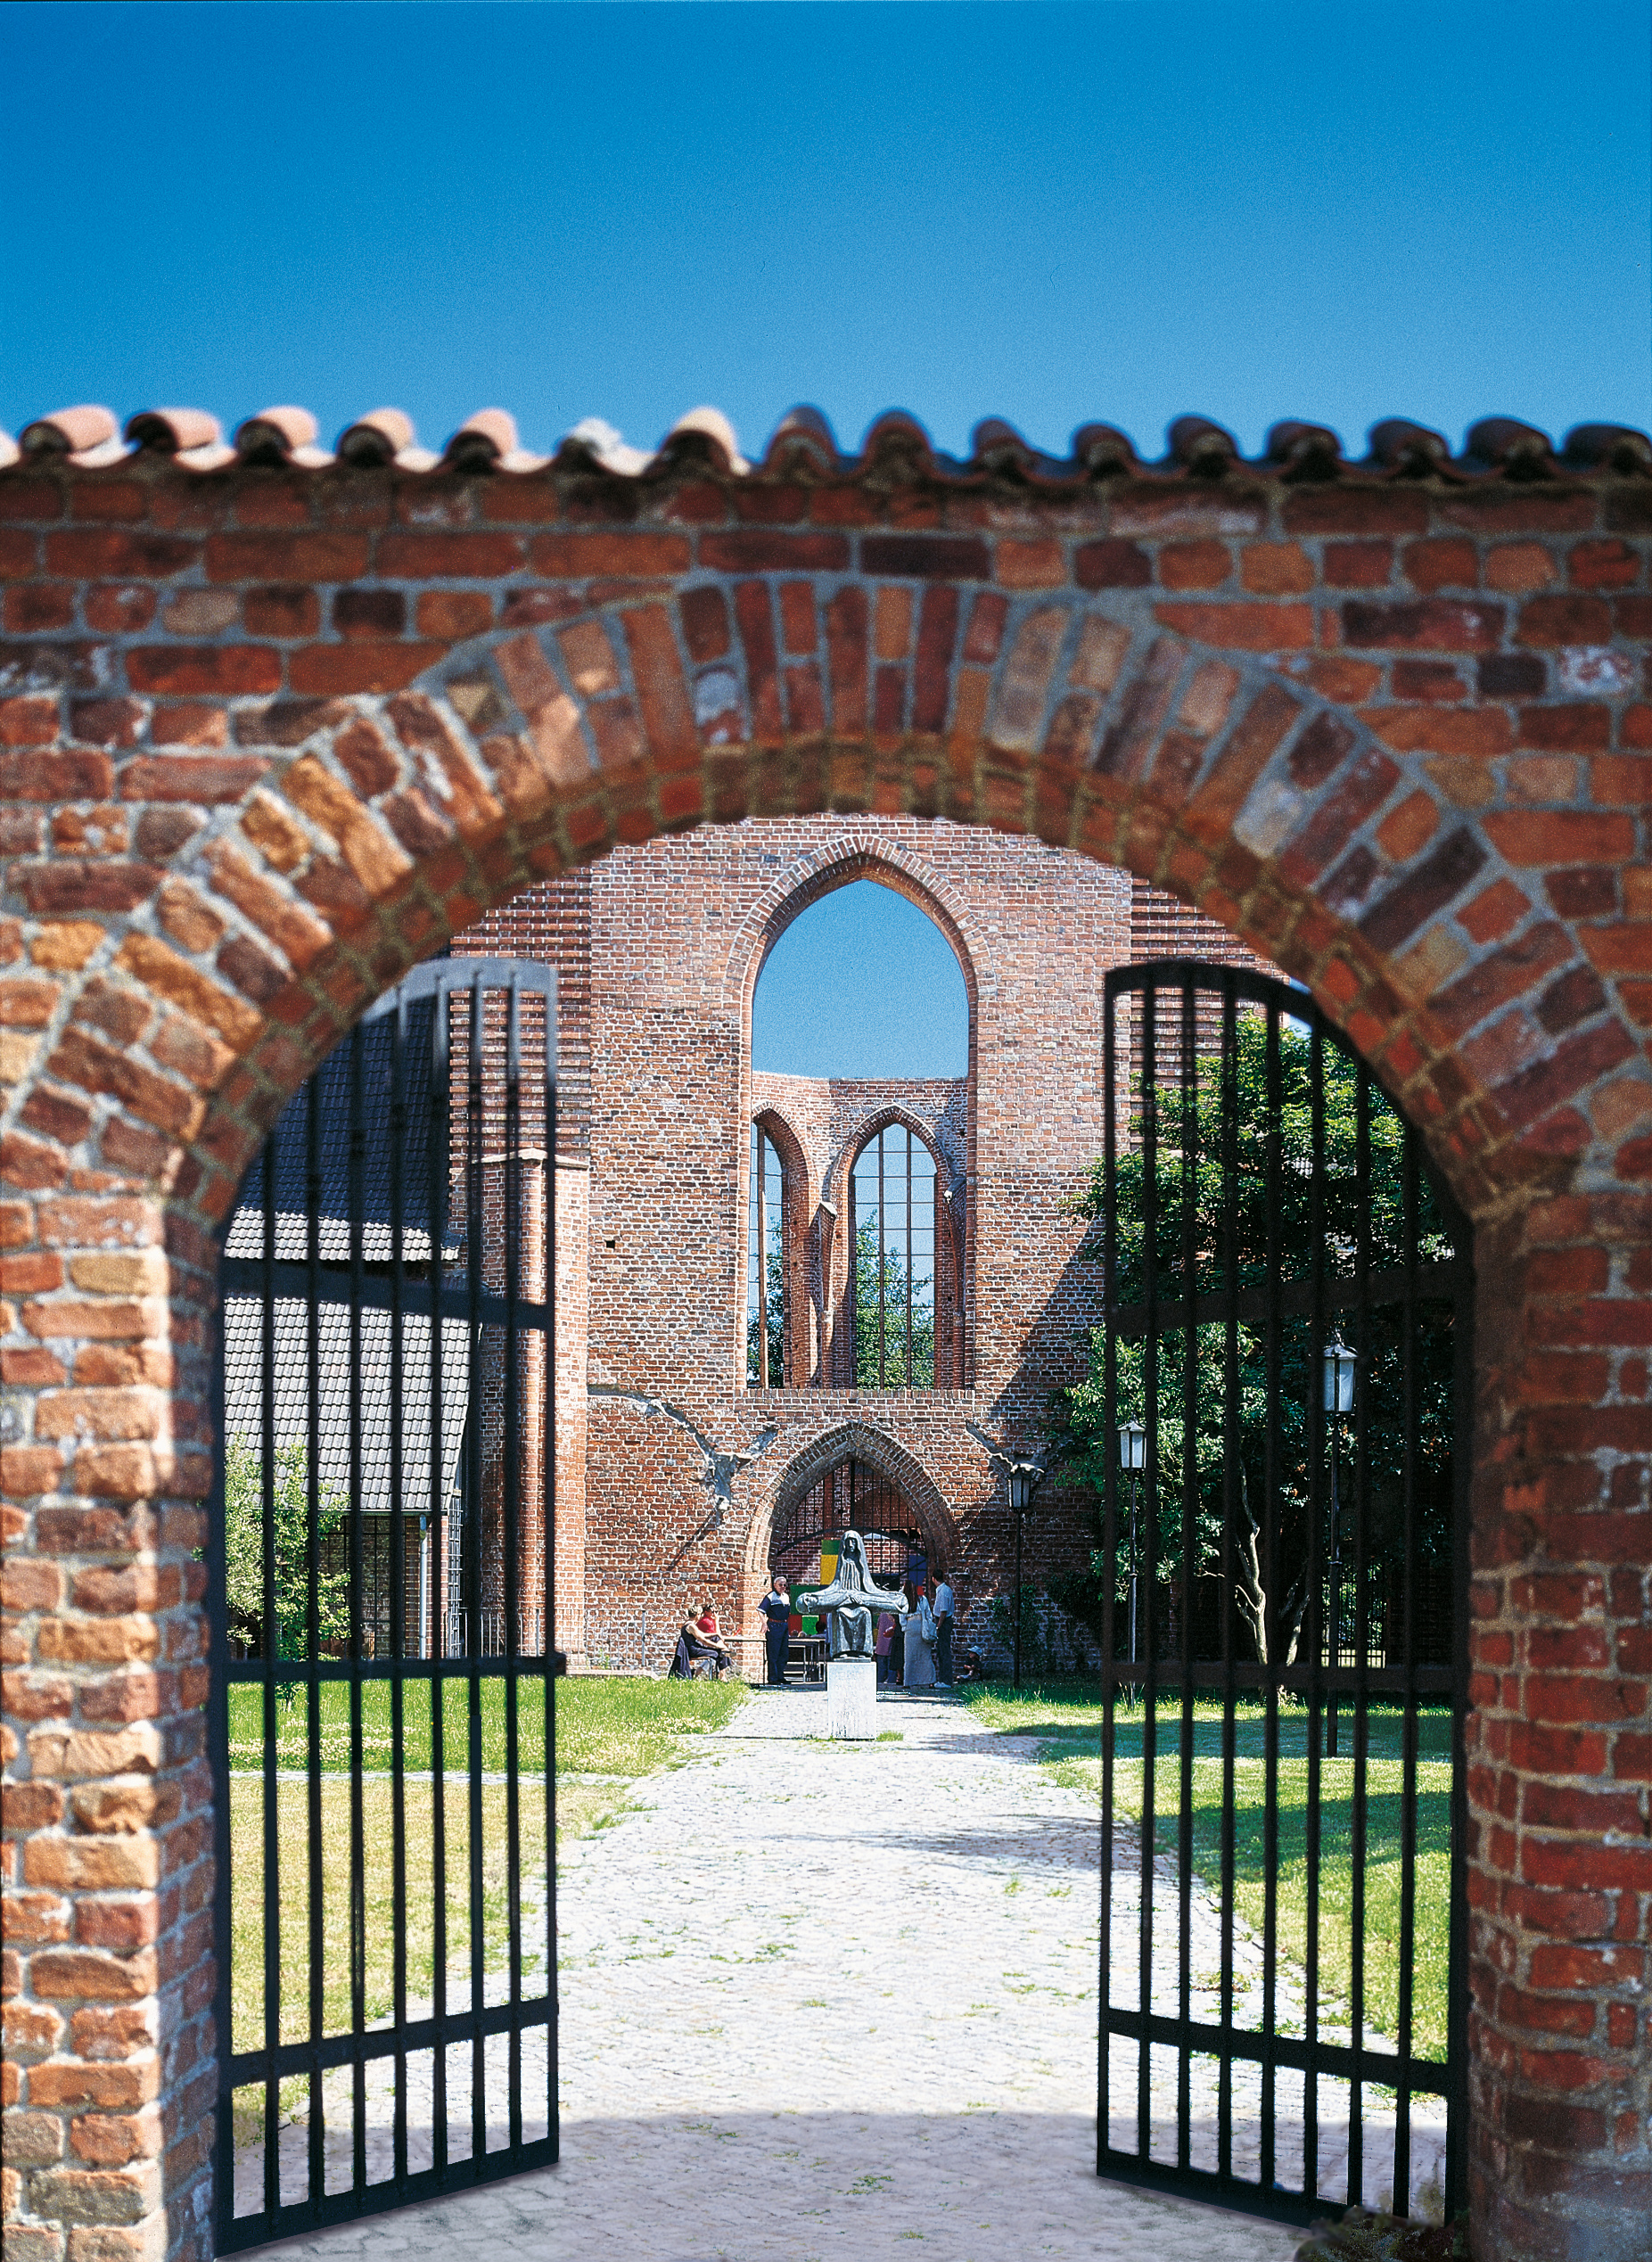 Die Ruine des Johannisklosters in der Hansestadt Stralsund.
